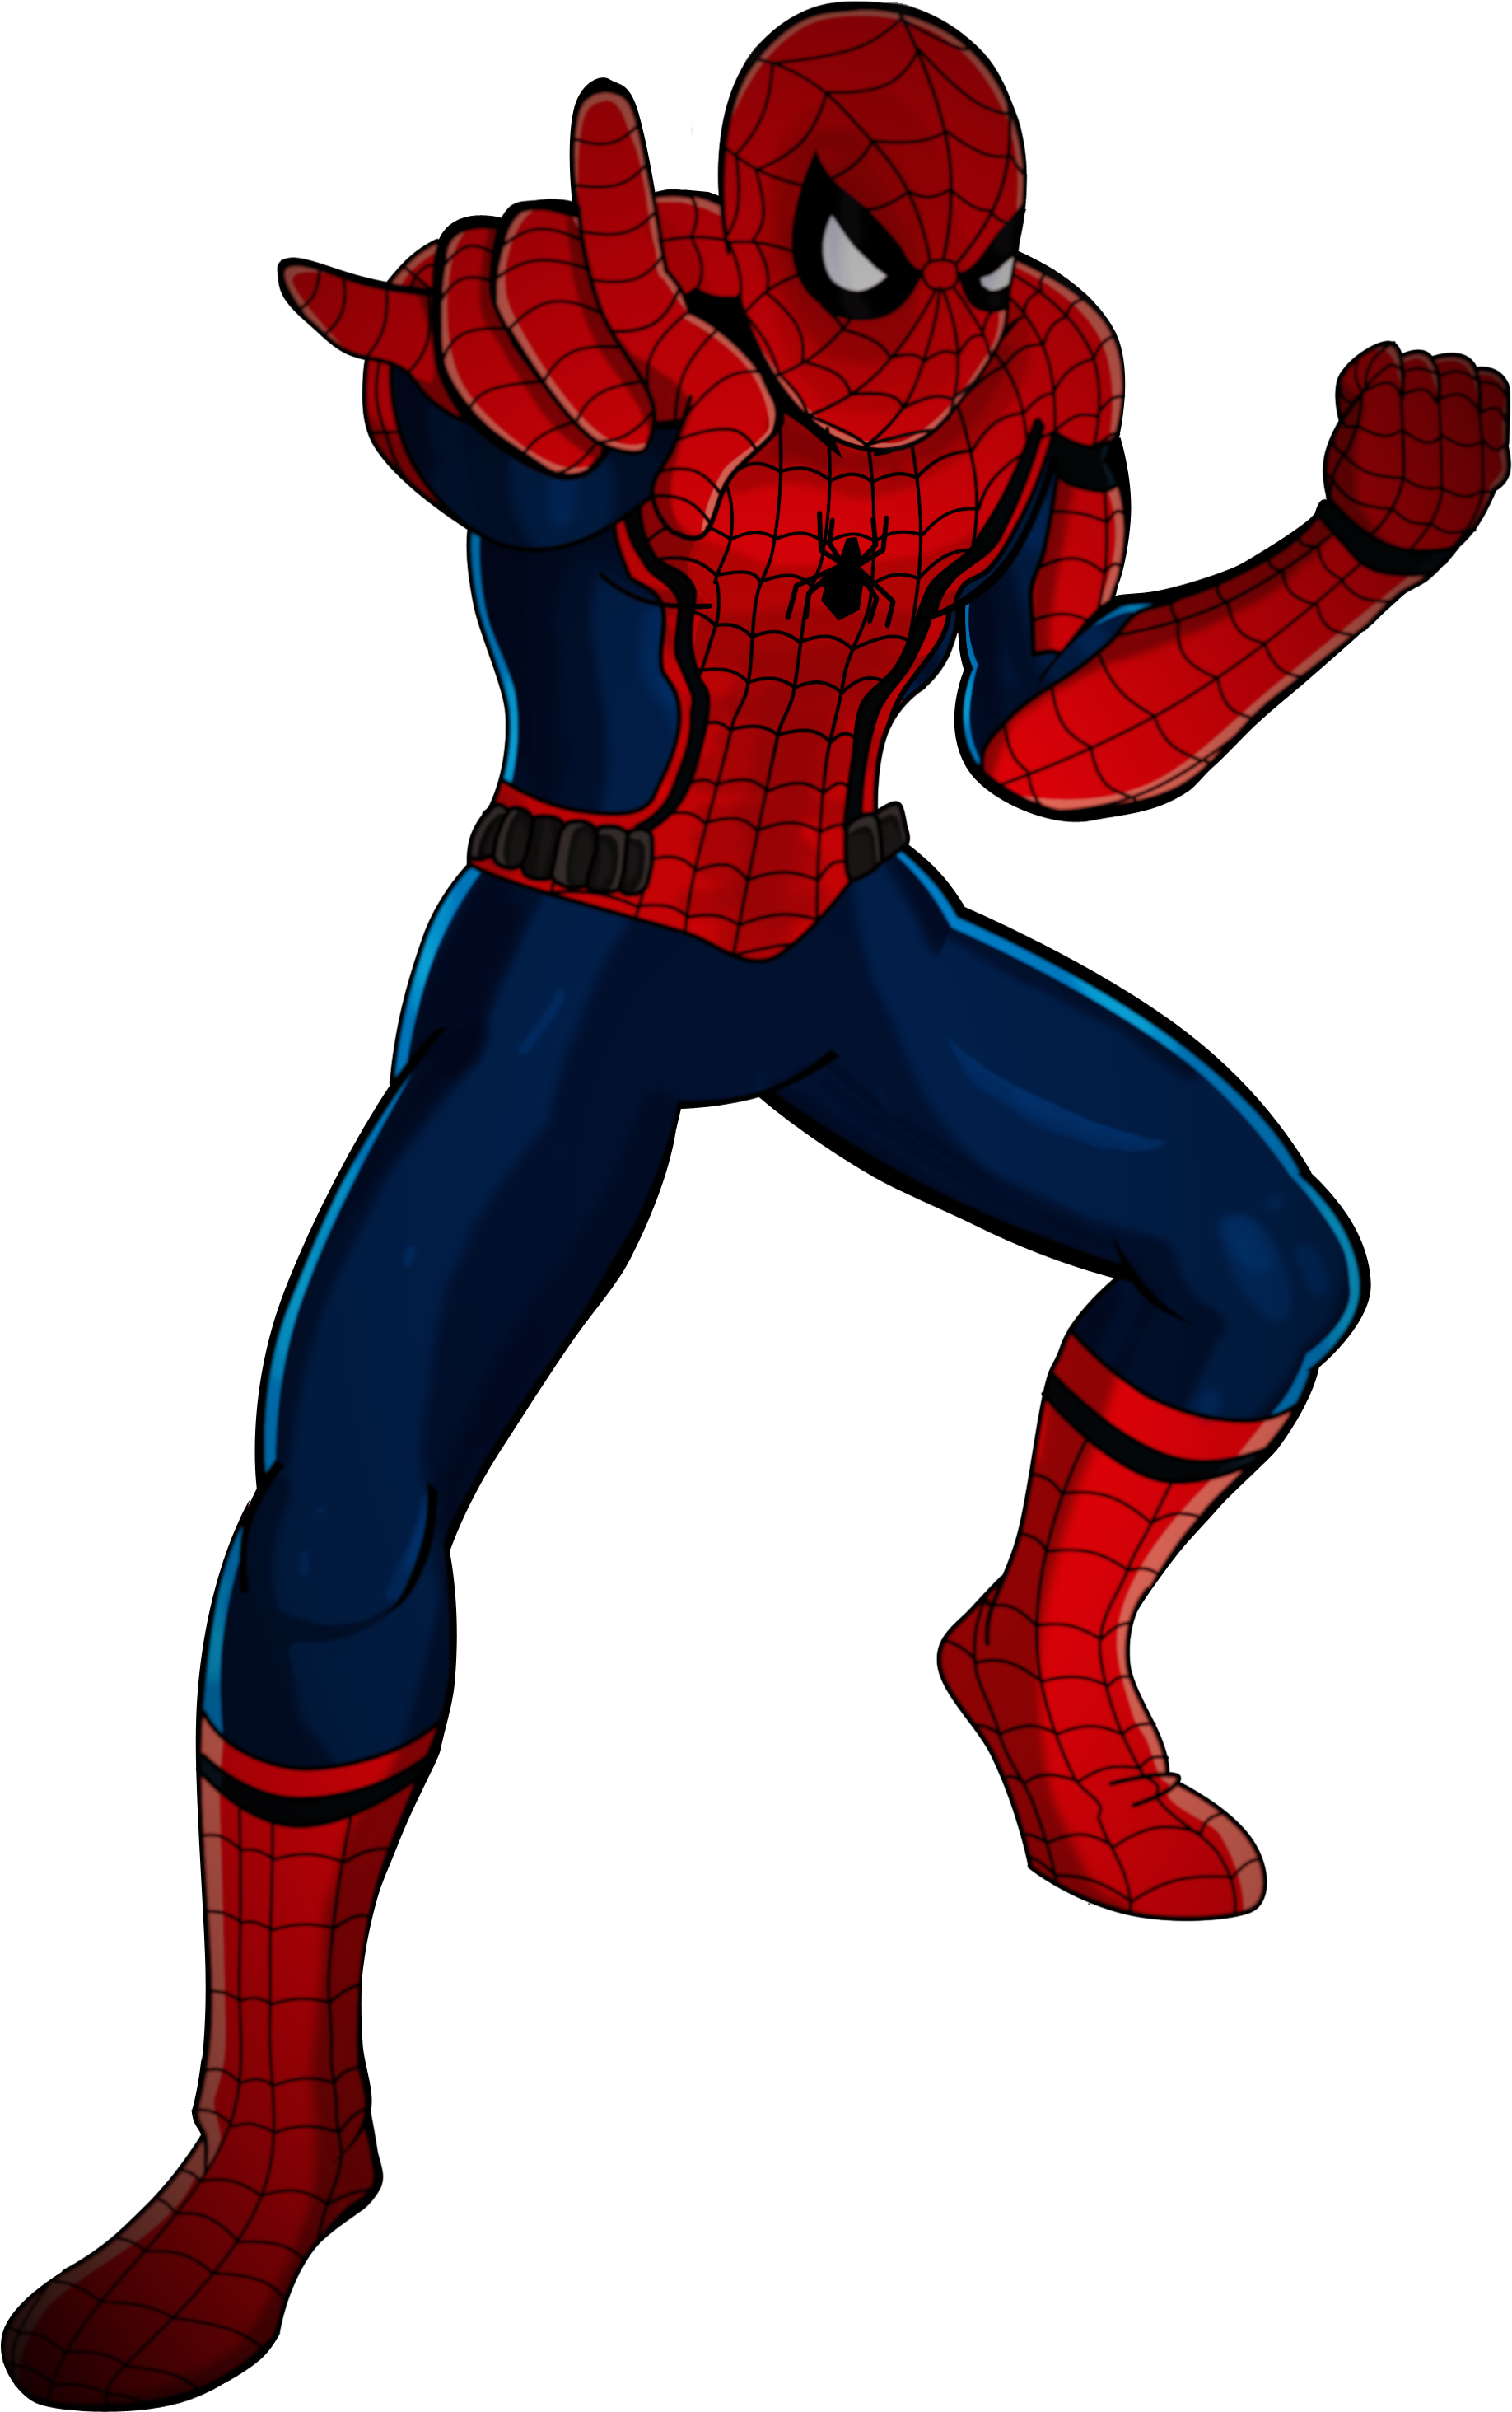 Spectacular Spider Man Civil War (1892x3010)